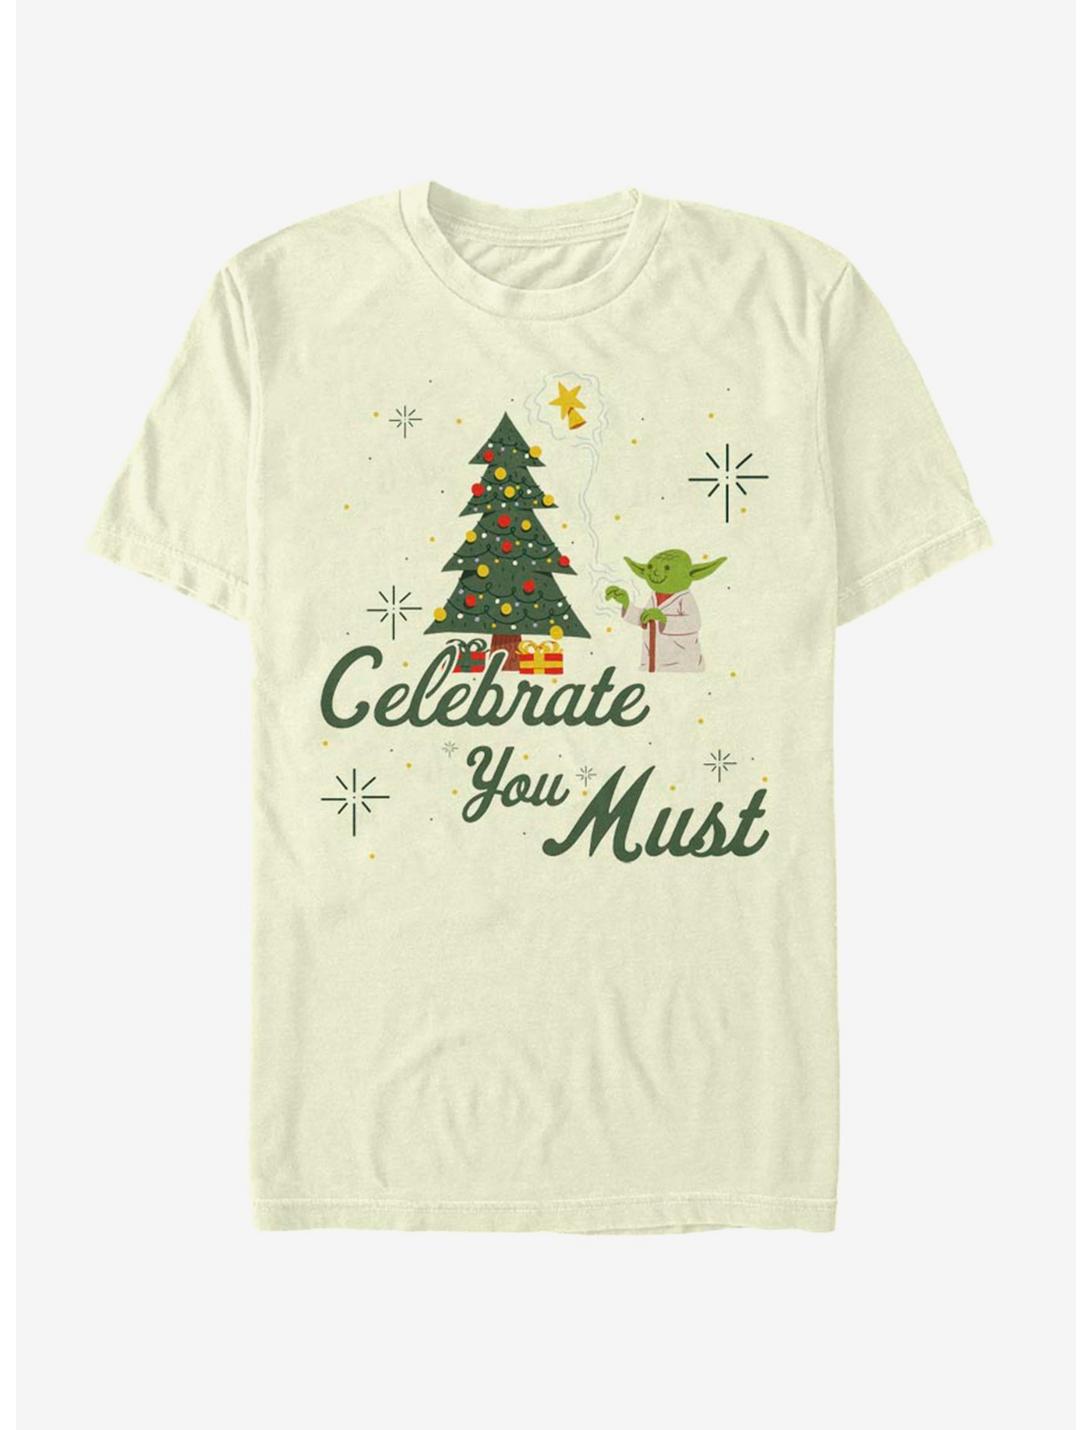 Star Wars Yoda Celebrate You Must Christmas T-Shirt, NATURAL, hi-res